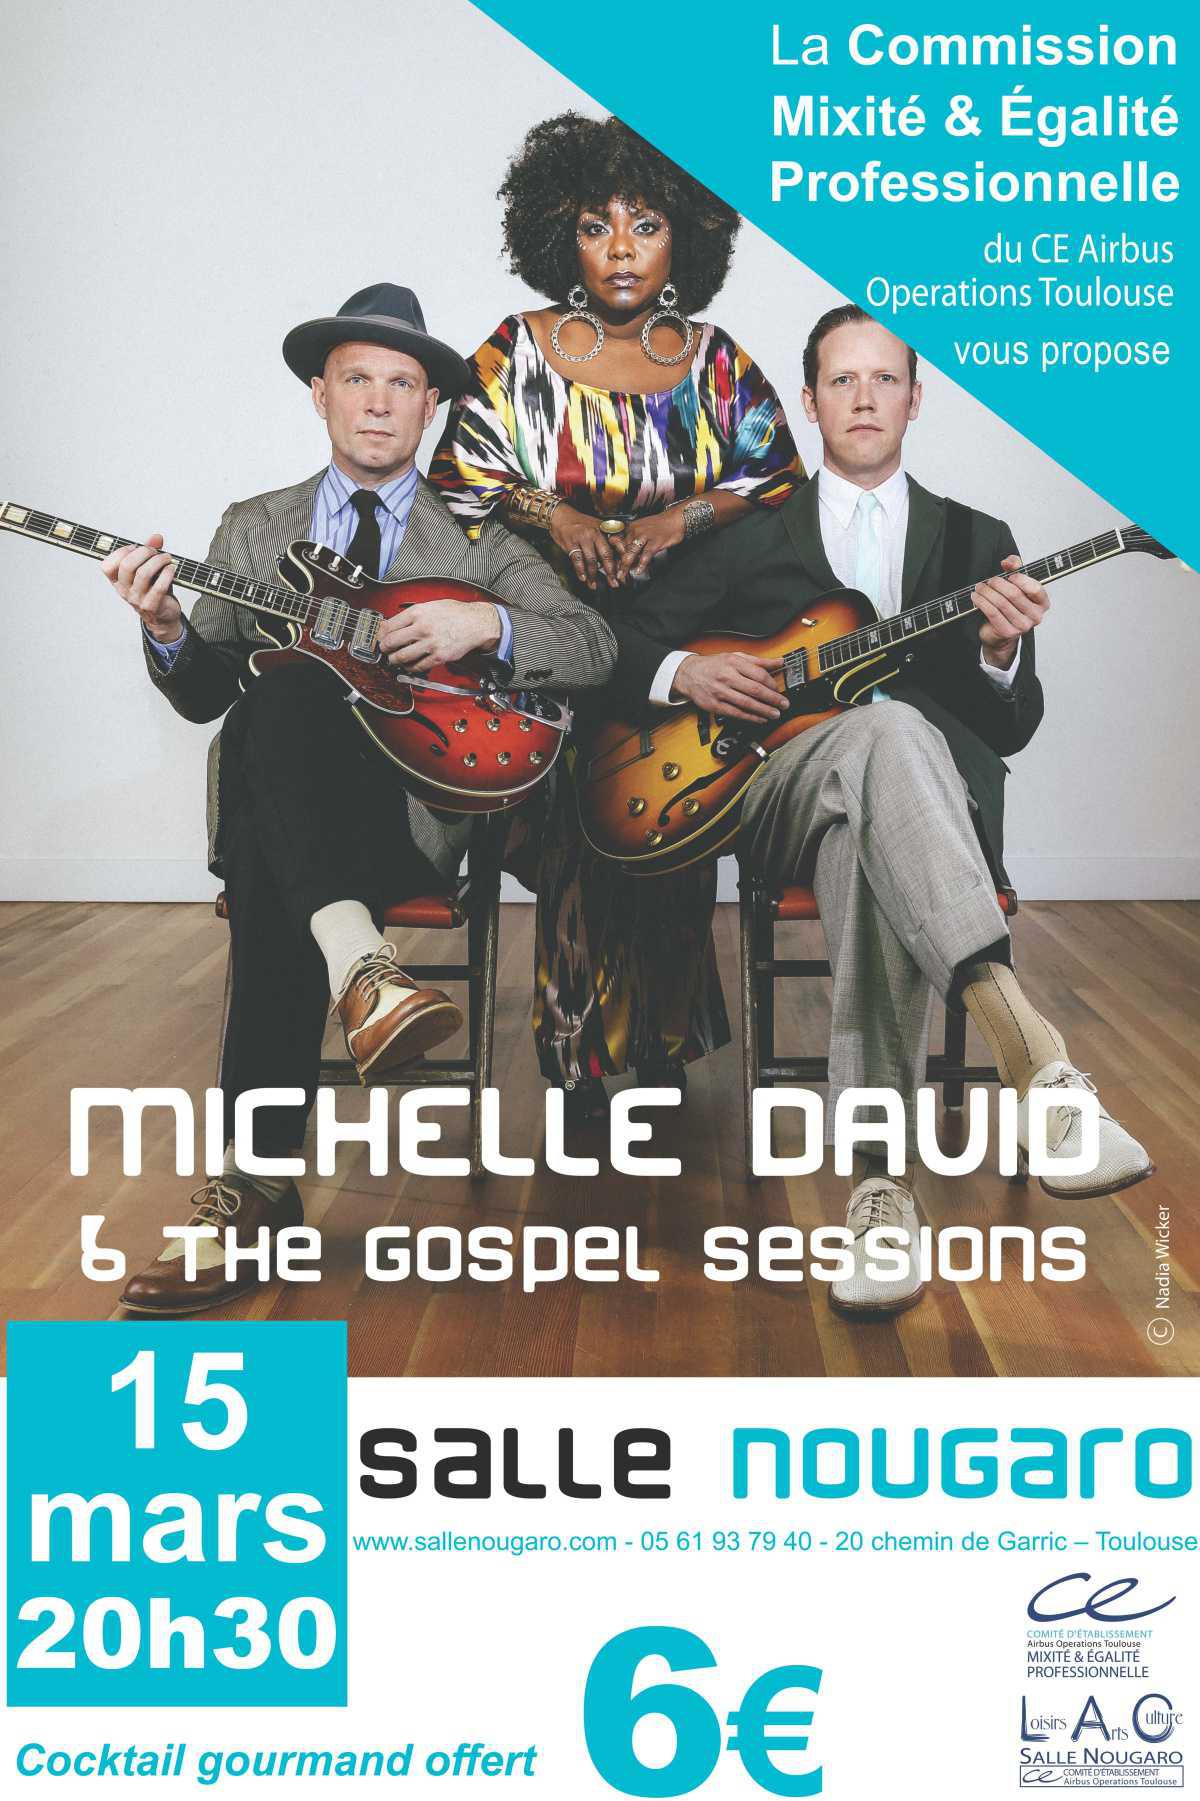 La Commission Mixité & Egalité vous propose un concert de Gospel à la salle Nougaro.